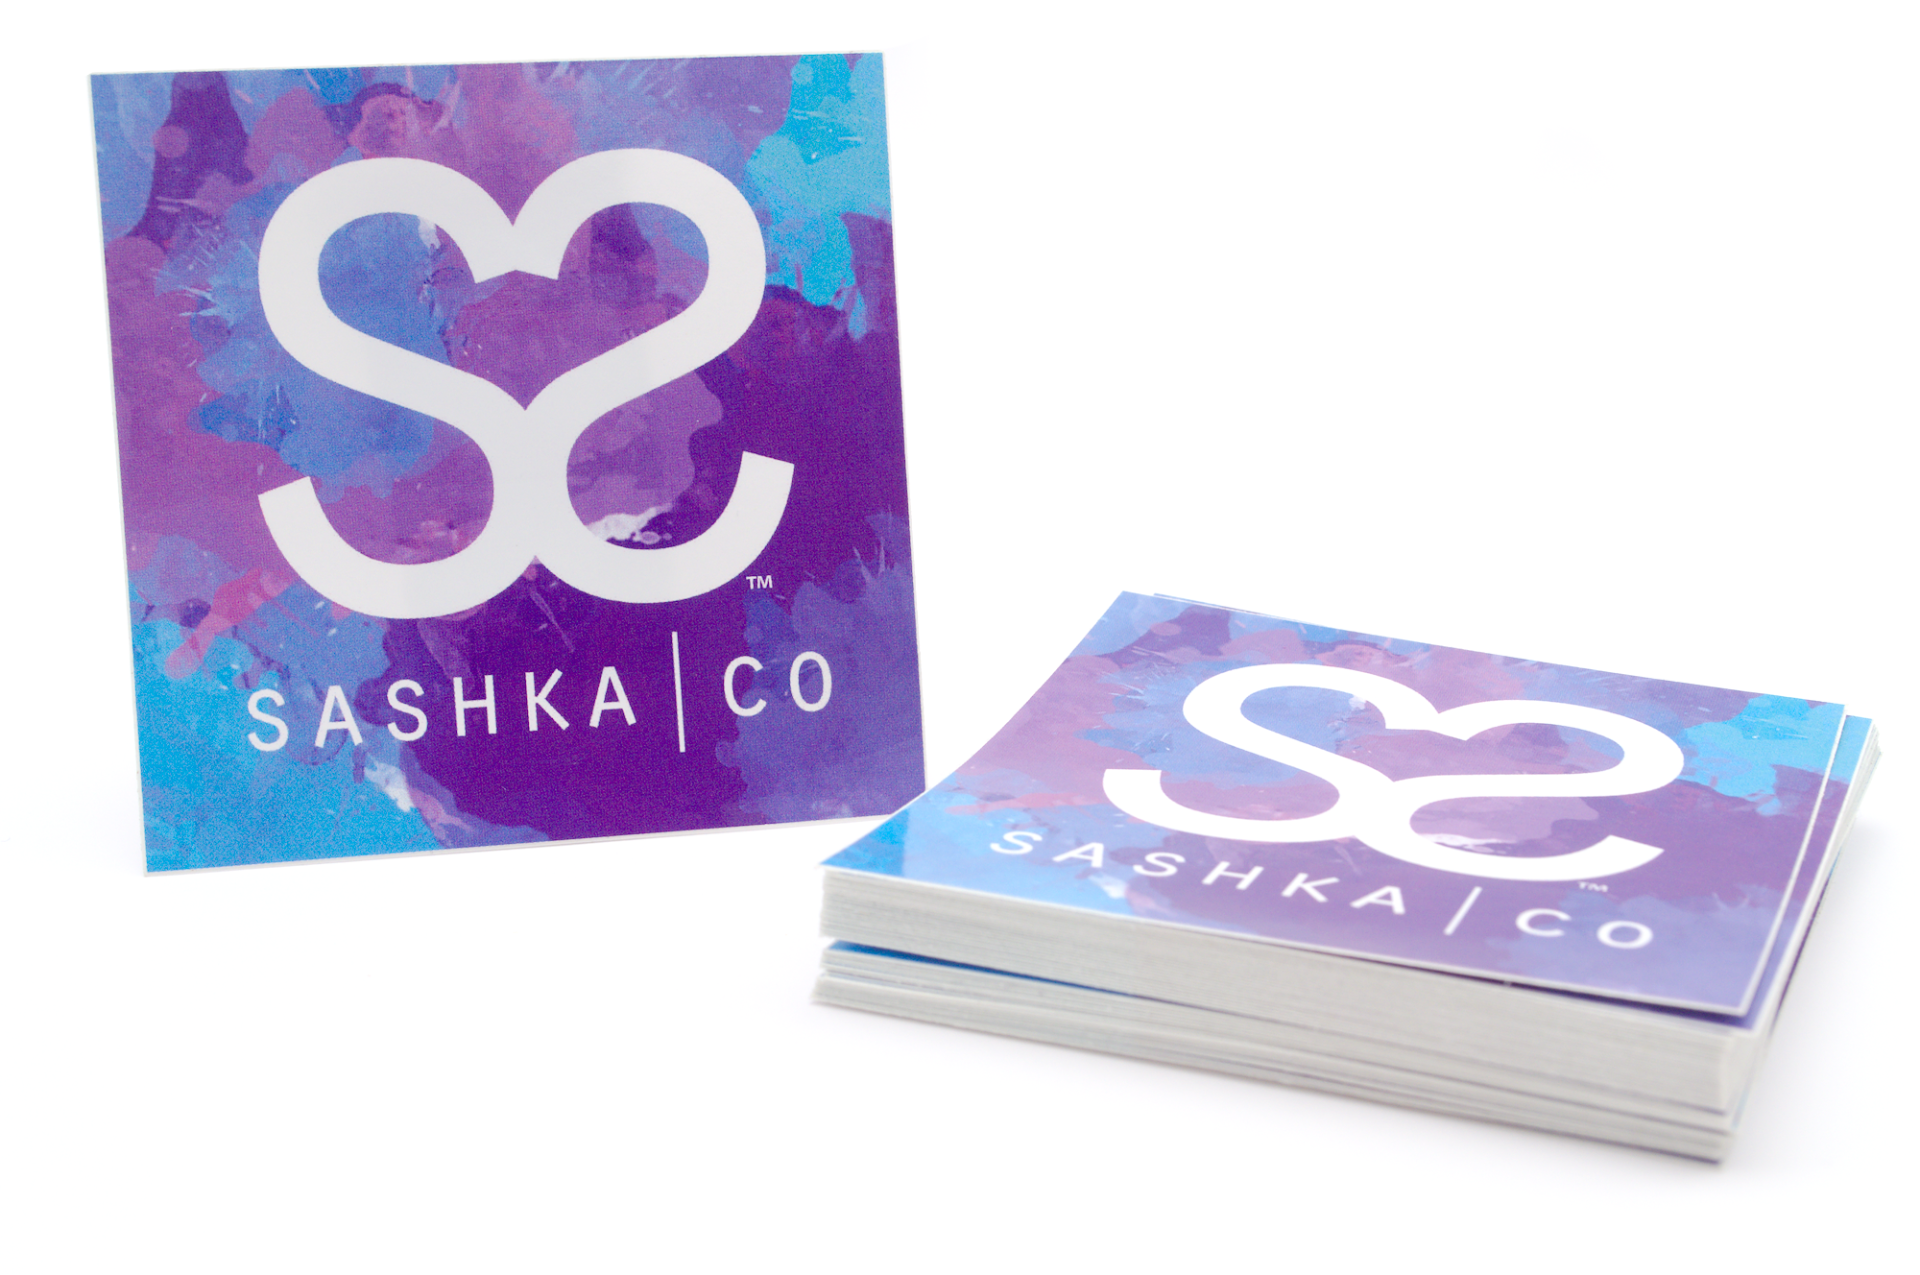 Sashka Co. Extended 8" Bracelet Pink/Turquoise/Purple Girly Bracelet - Extended 8"